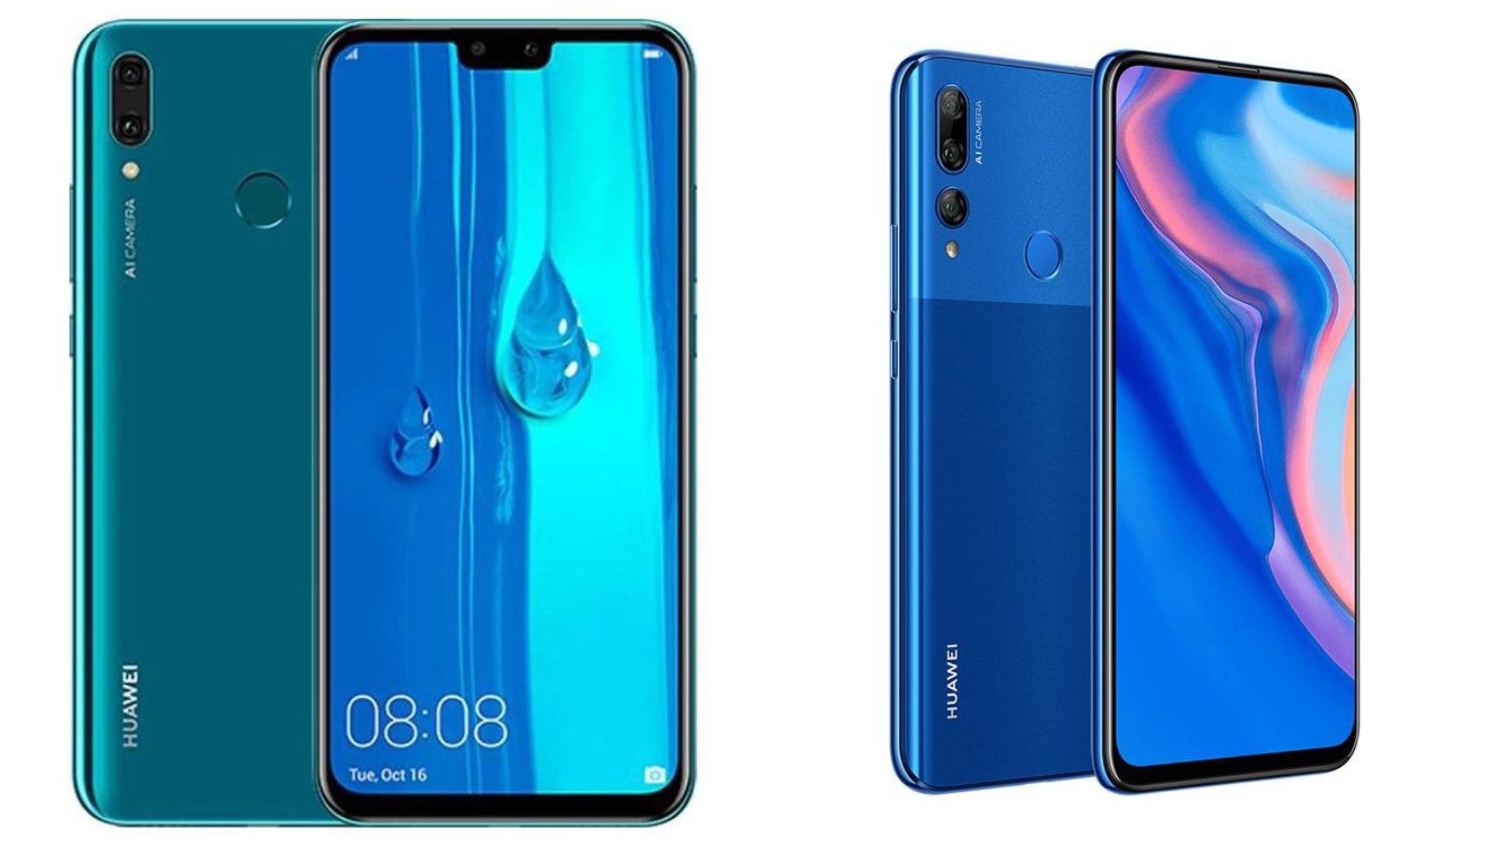 Keunggulan dan Kekurangan Smartphone Huawei Y9 Performa Handal Dibekali Prosesor Kirin 710, Harga Terjangkau! 